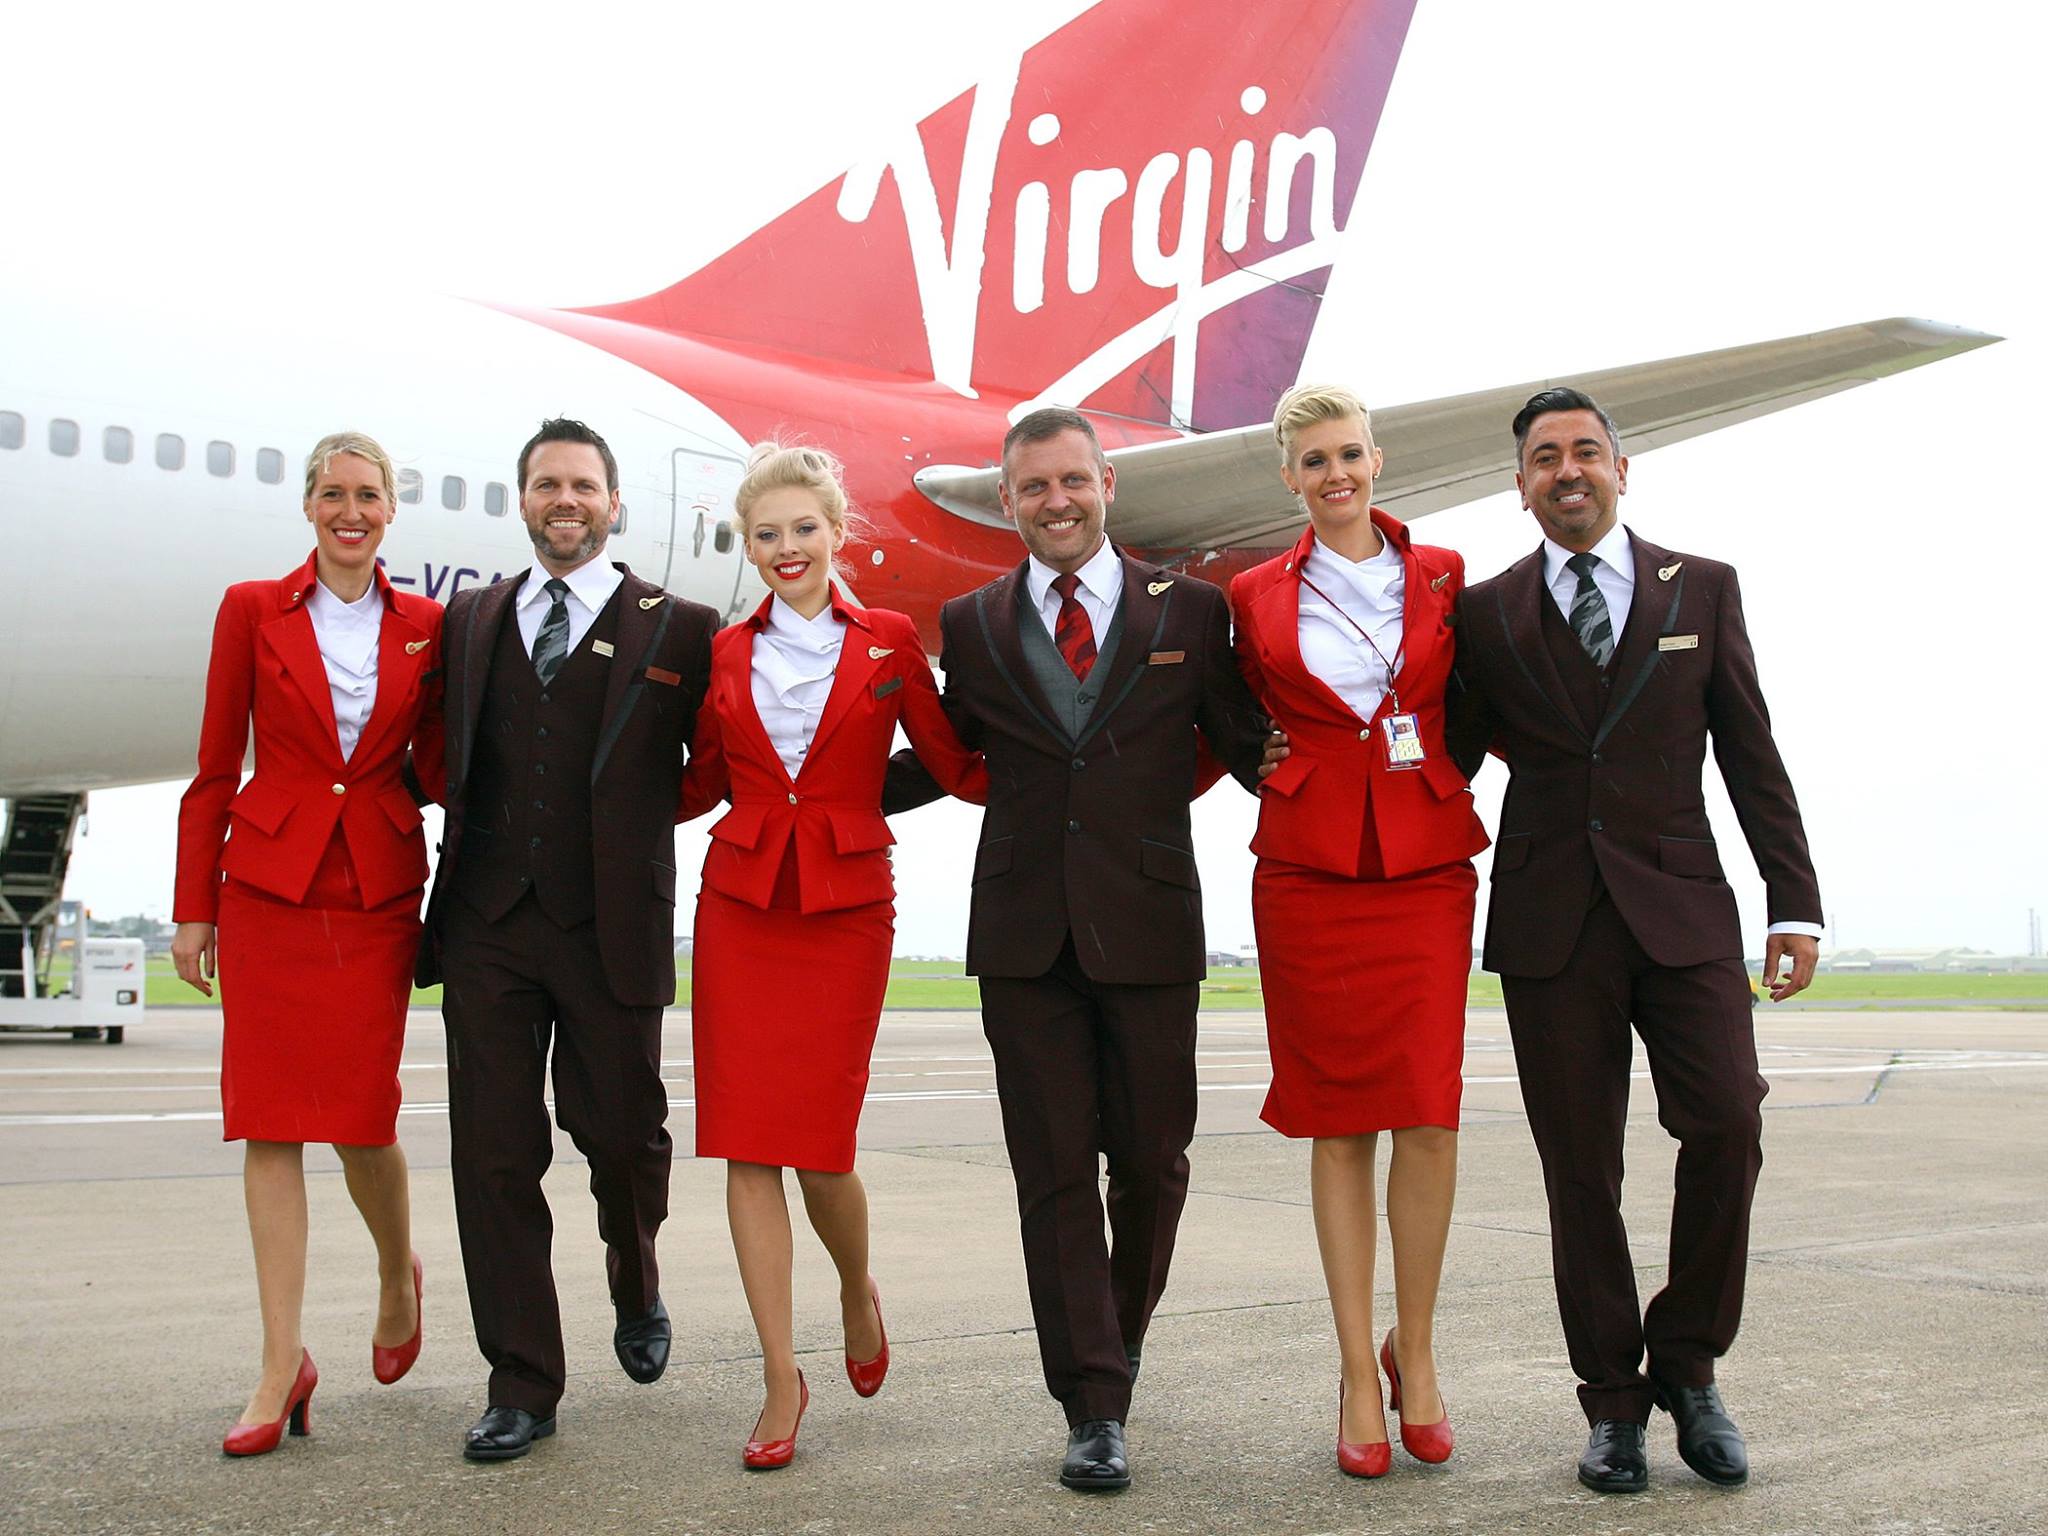 Virgin Atlantic lance une nouvelle campagne publicitaire (vidéo) 1 Air Journal